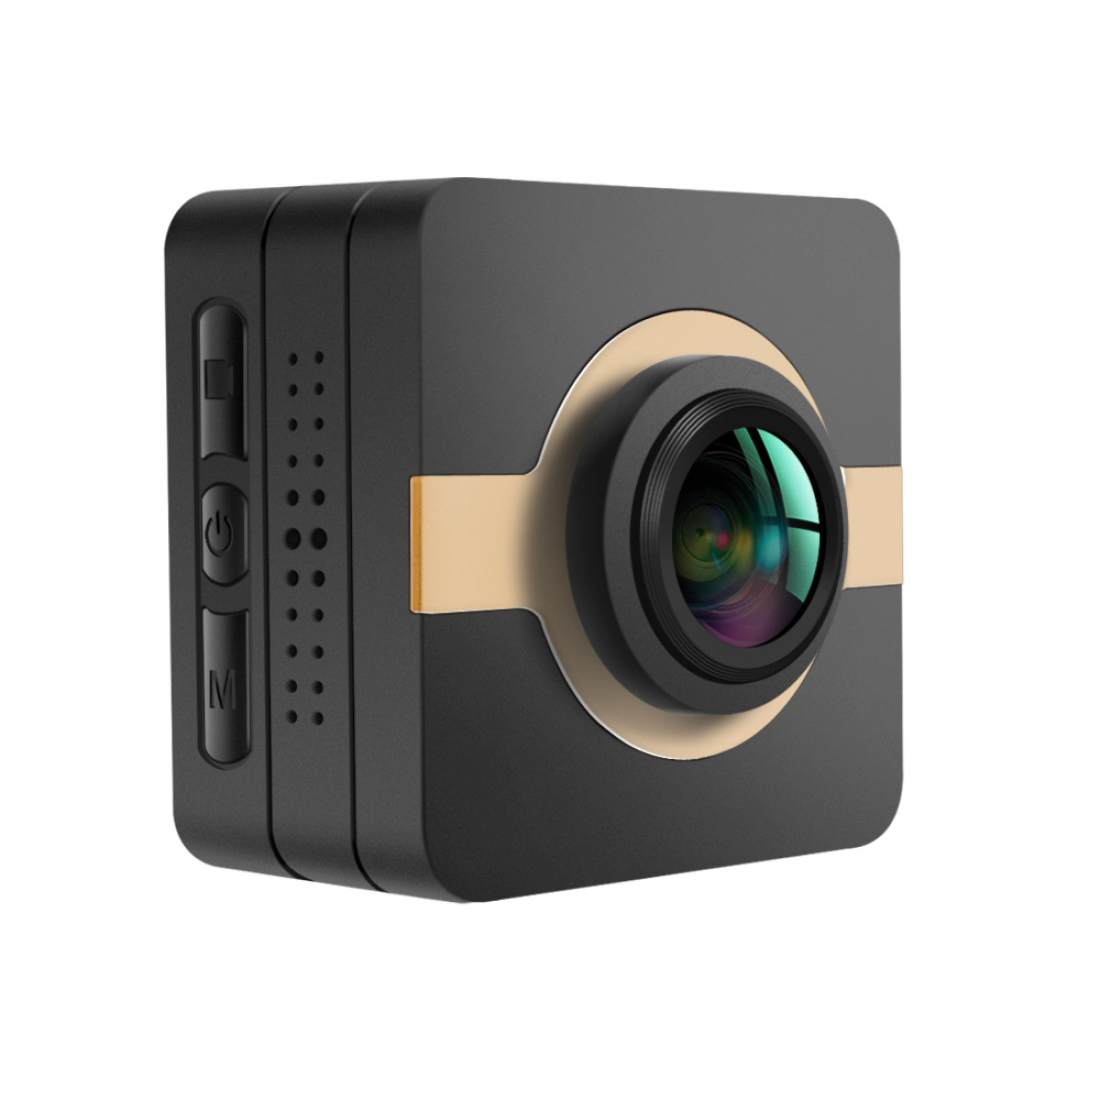 Matecam X1 Mini Eylem Kamera Araba Dashboard Kamera Kamera kaydedici 4K-HI Ultra HD Su Geçirmez DV Video Kamera 16MP 160 Derece Geniş Açı WIFI/G-Sensor/Gyro Stabilizasyon/Hareket Algılama/Uzaktan kumanda Mini DVR araba anahtarları mikro RC kam Bisiklet Kaskı Kam Kahverengi